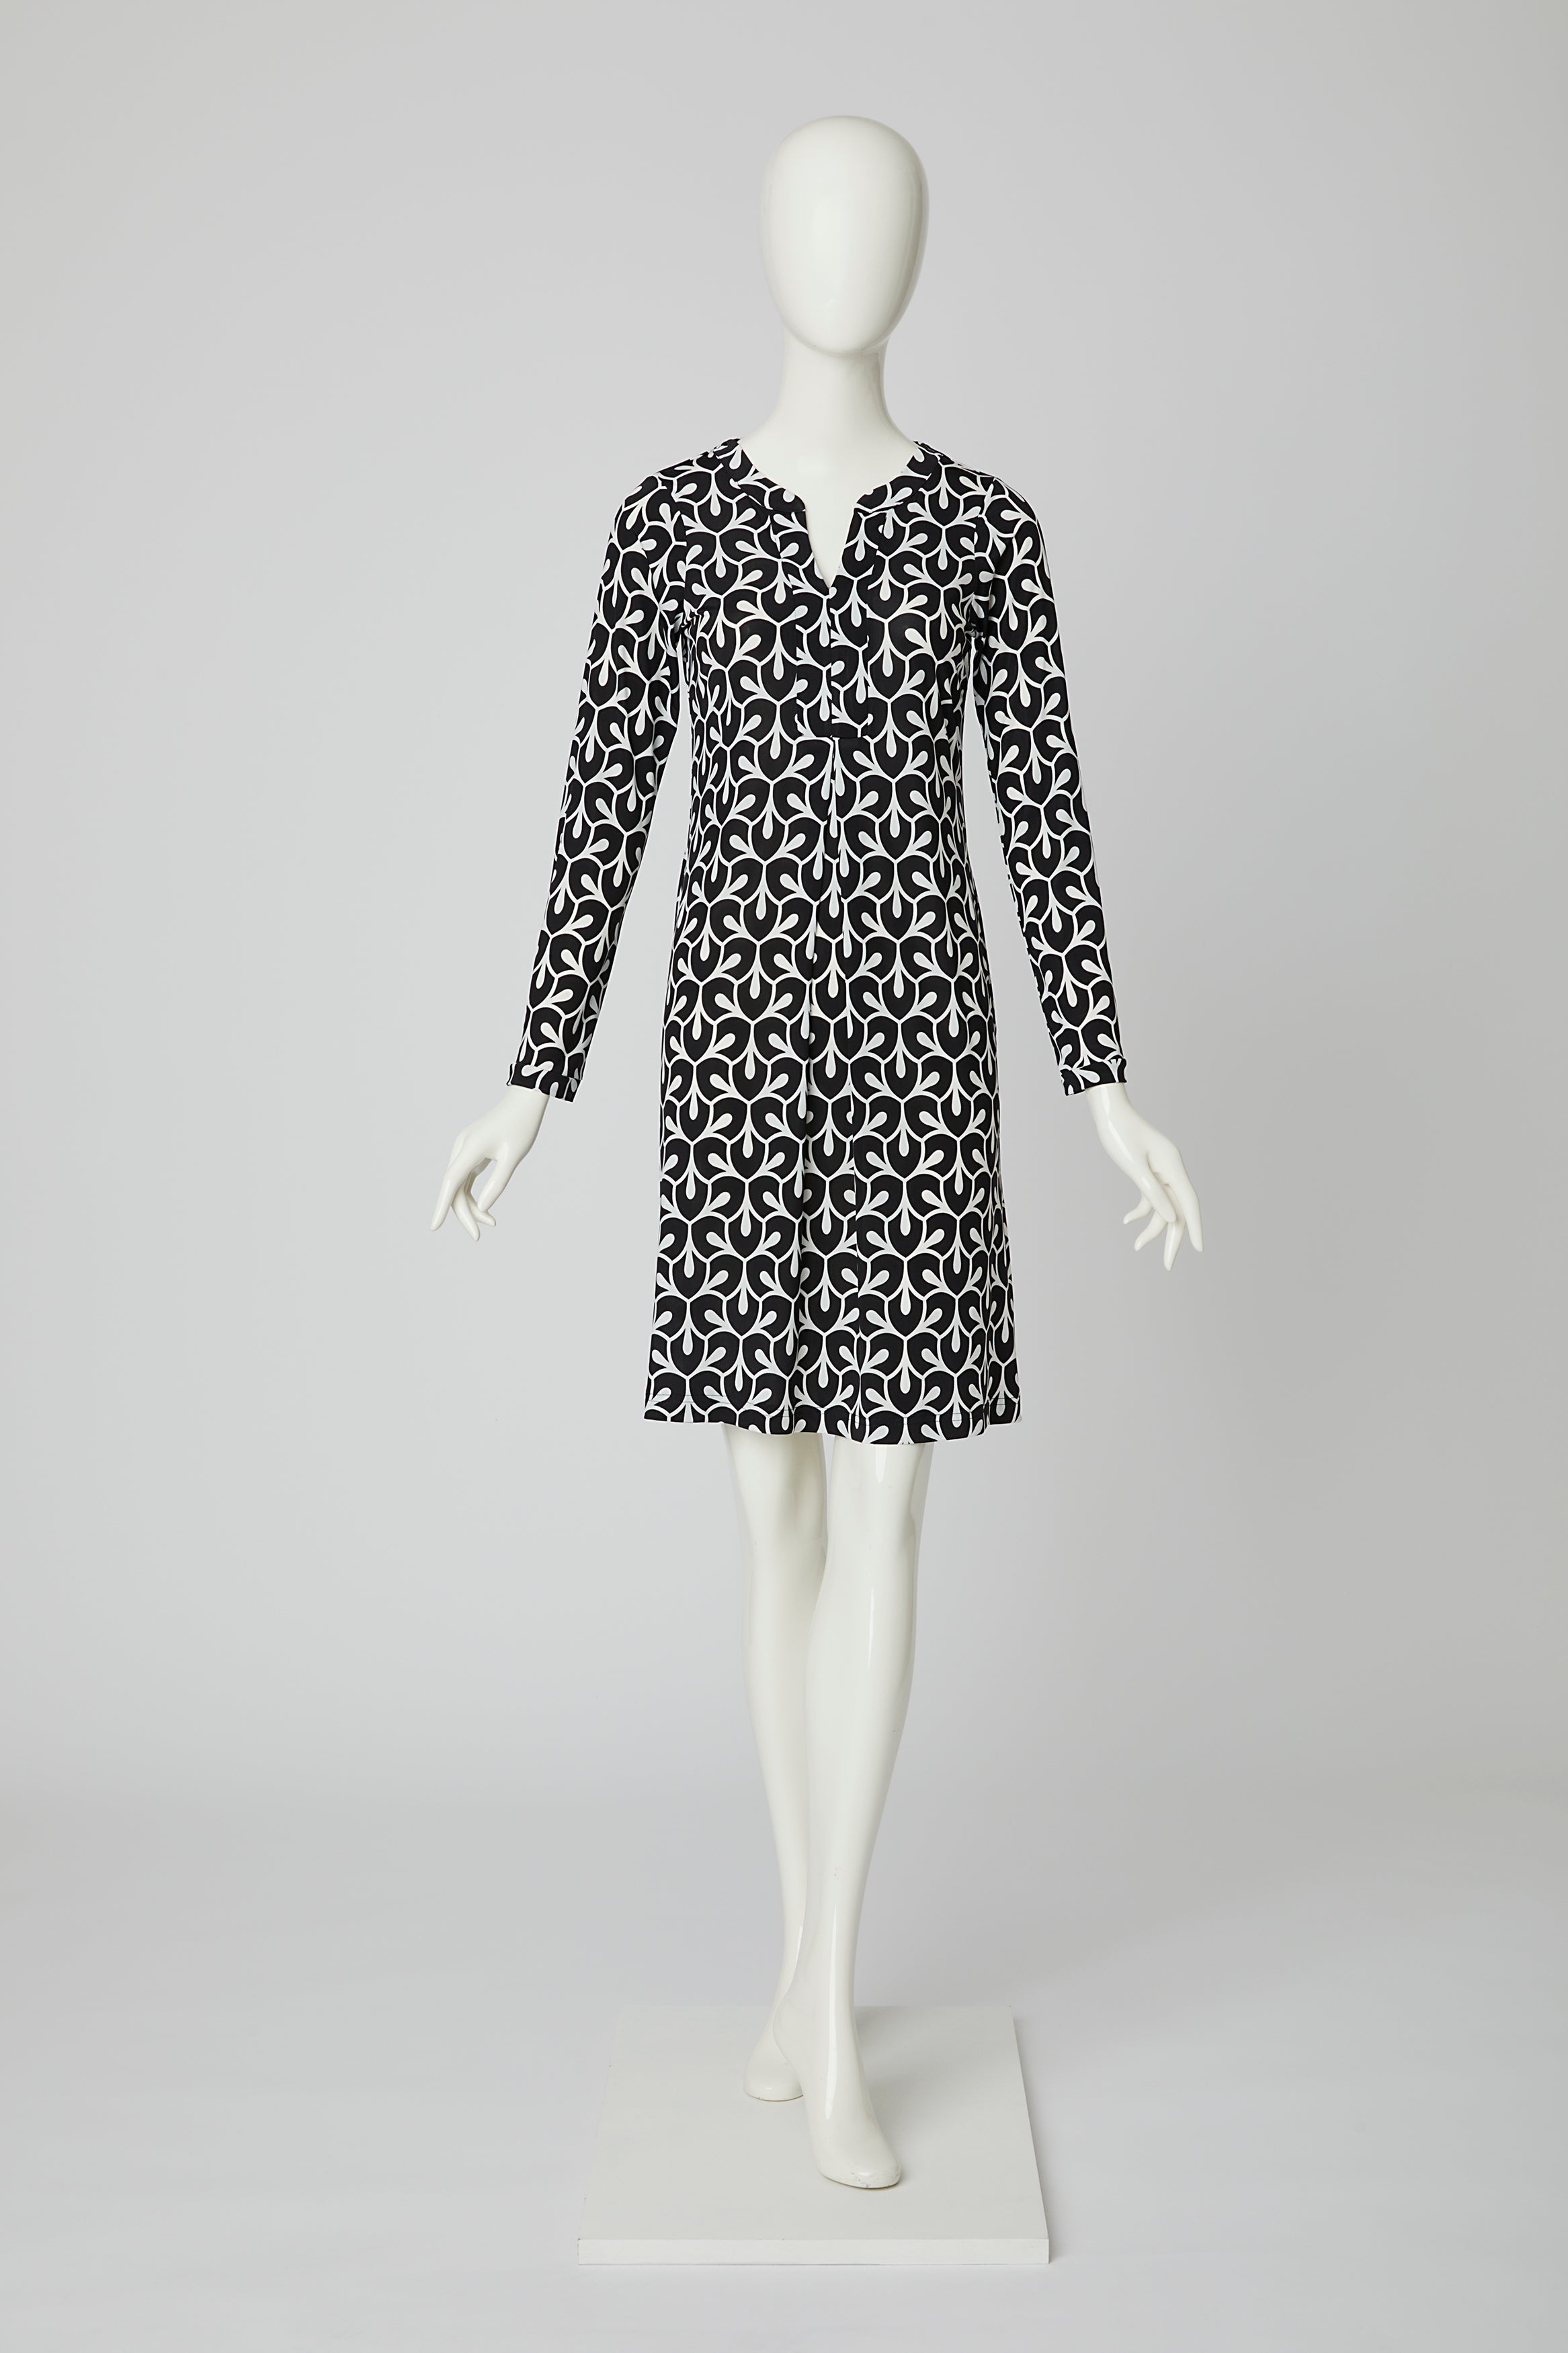 Kleid mit Muster von dem Hamburger Modelabel stegmann mode